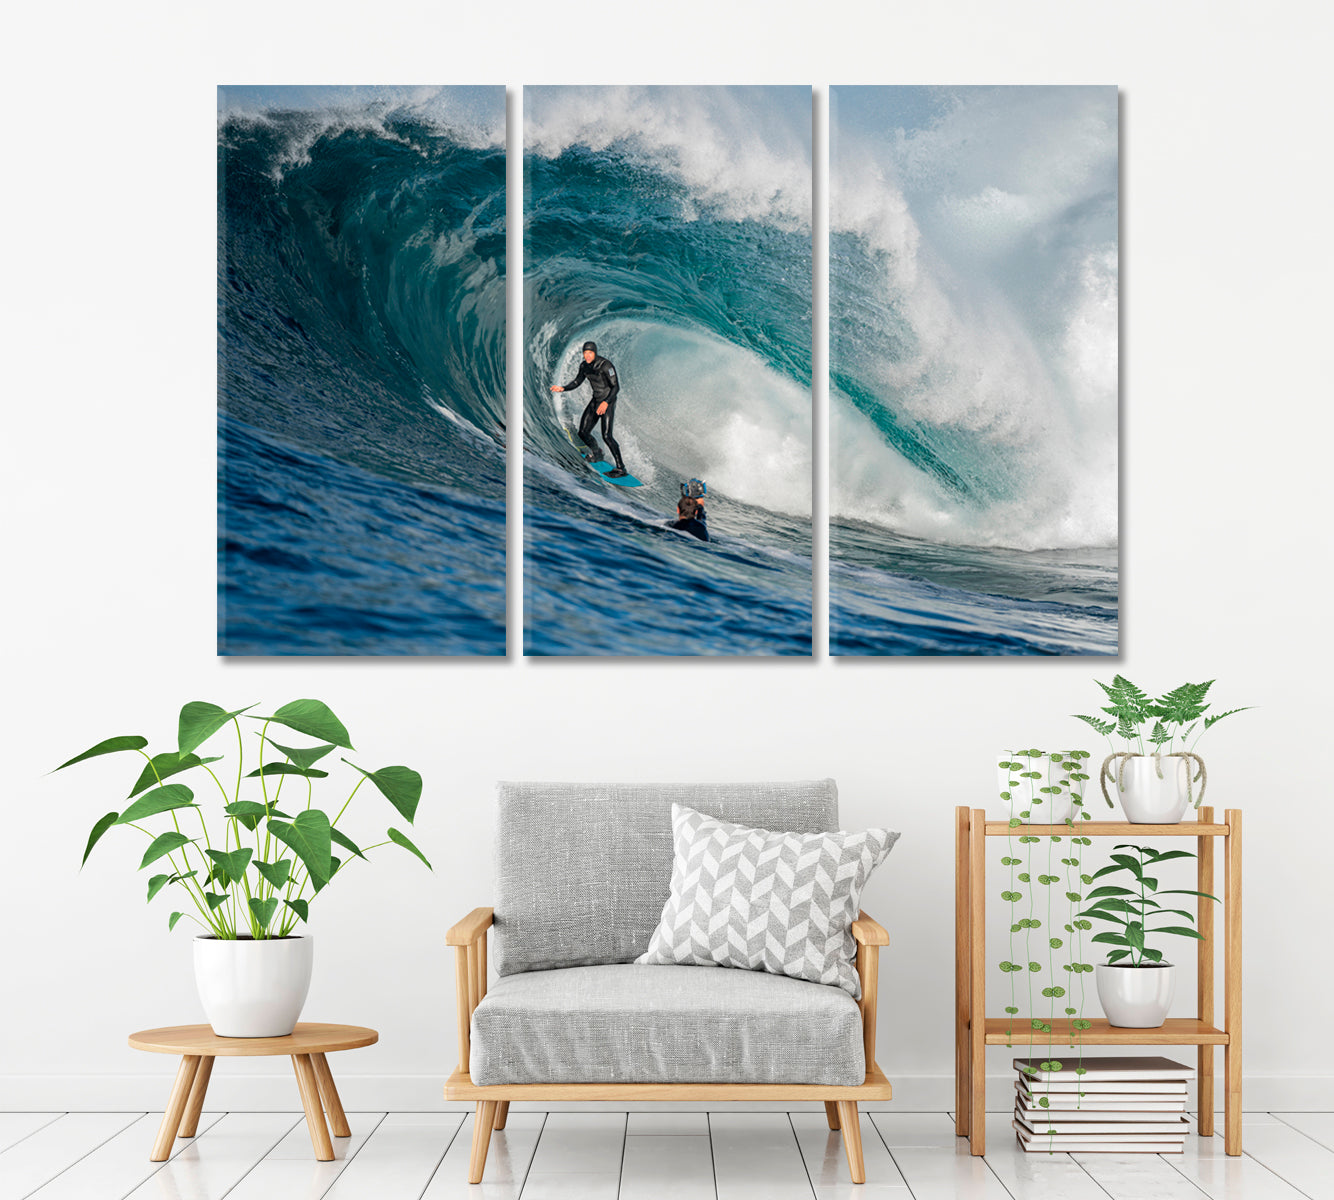 BIG WAVES Surfer Motivation Sport Poster Print Decor Artesty 3 panels 36" x 24" 